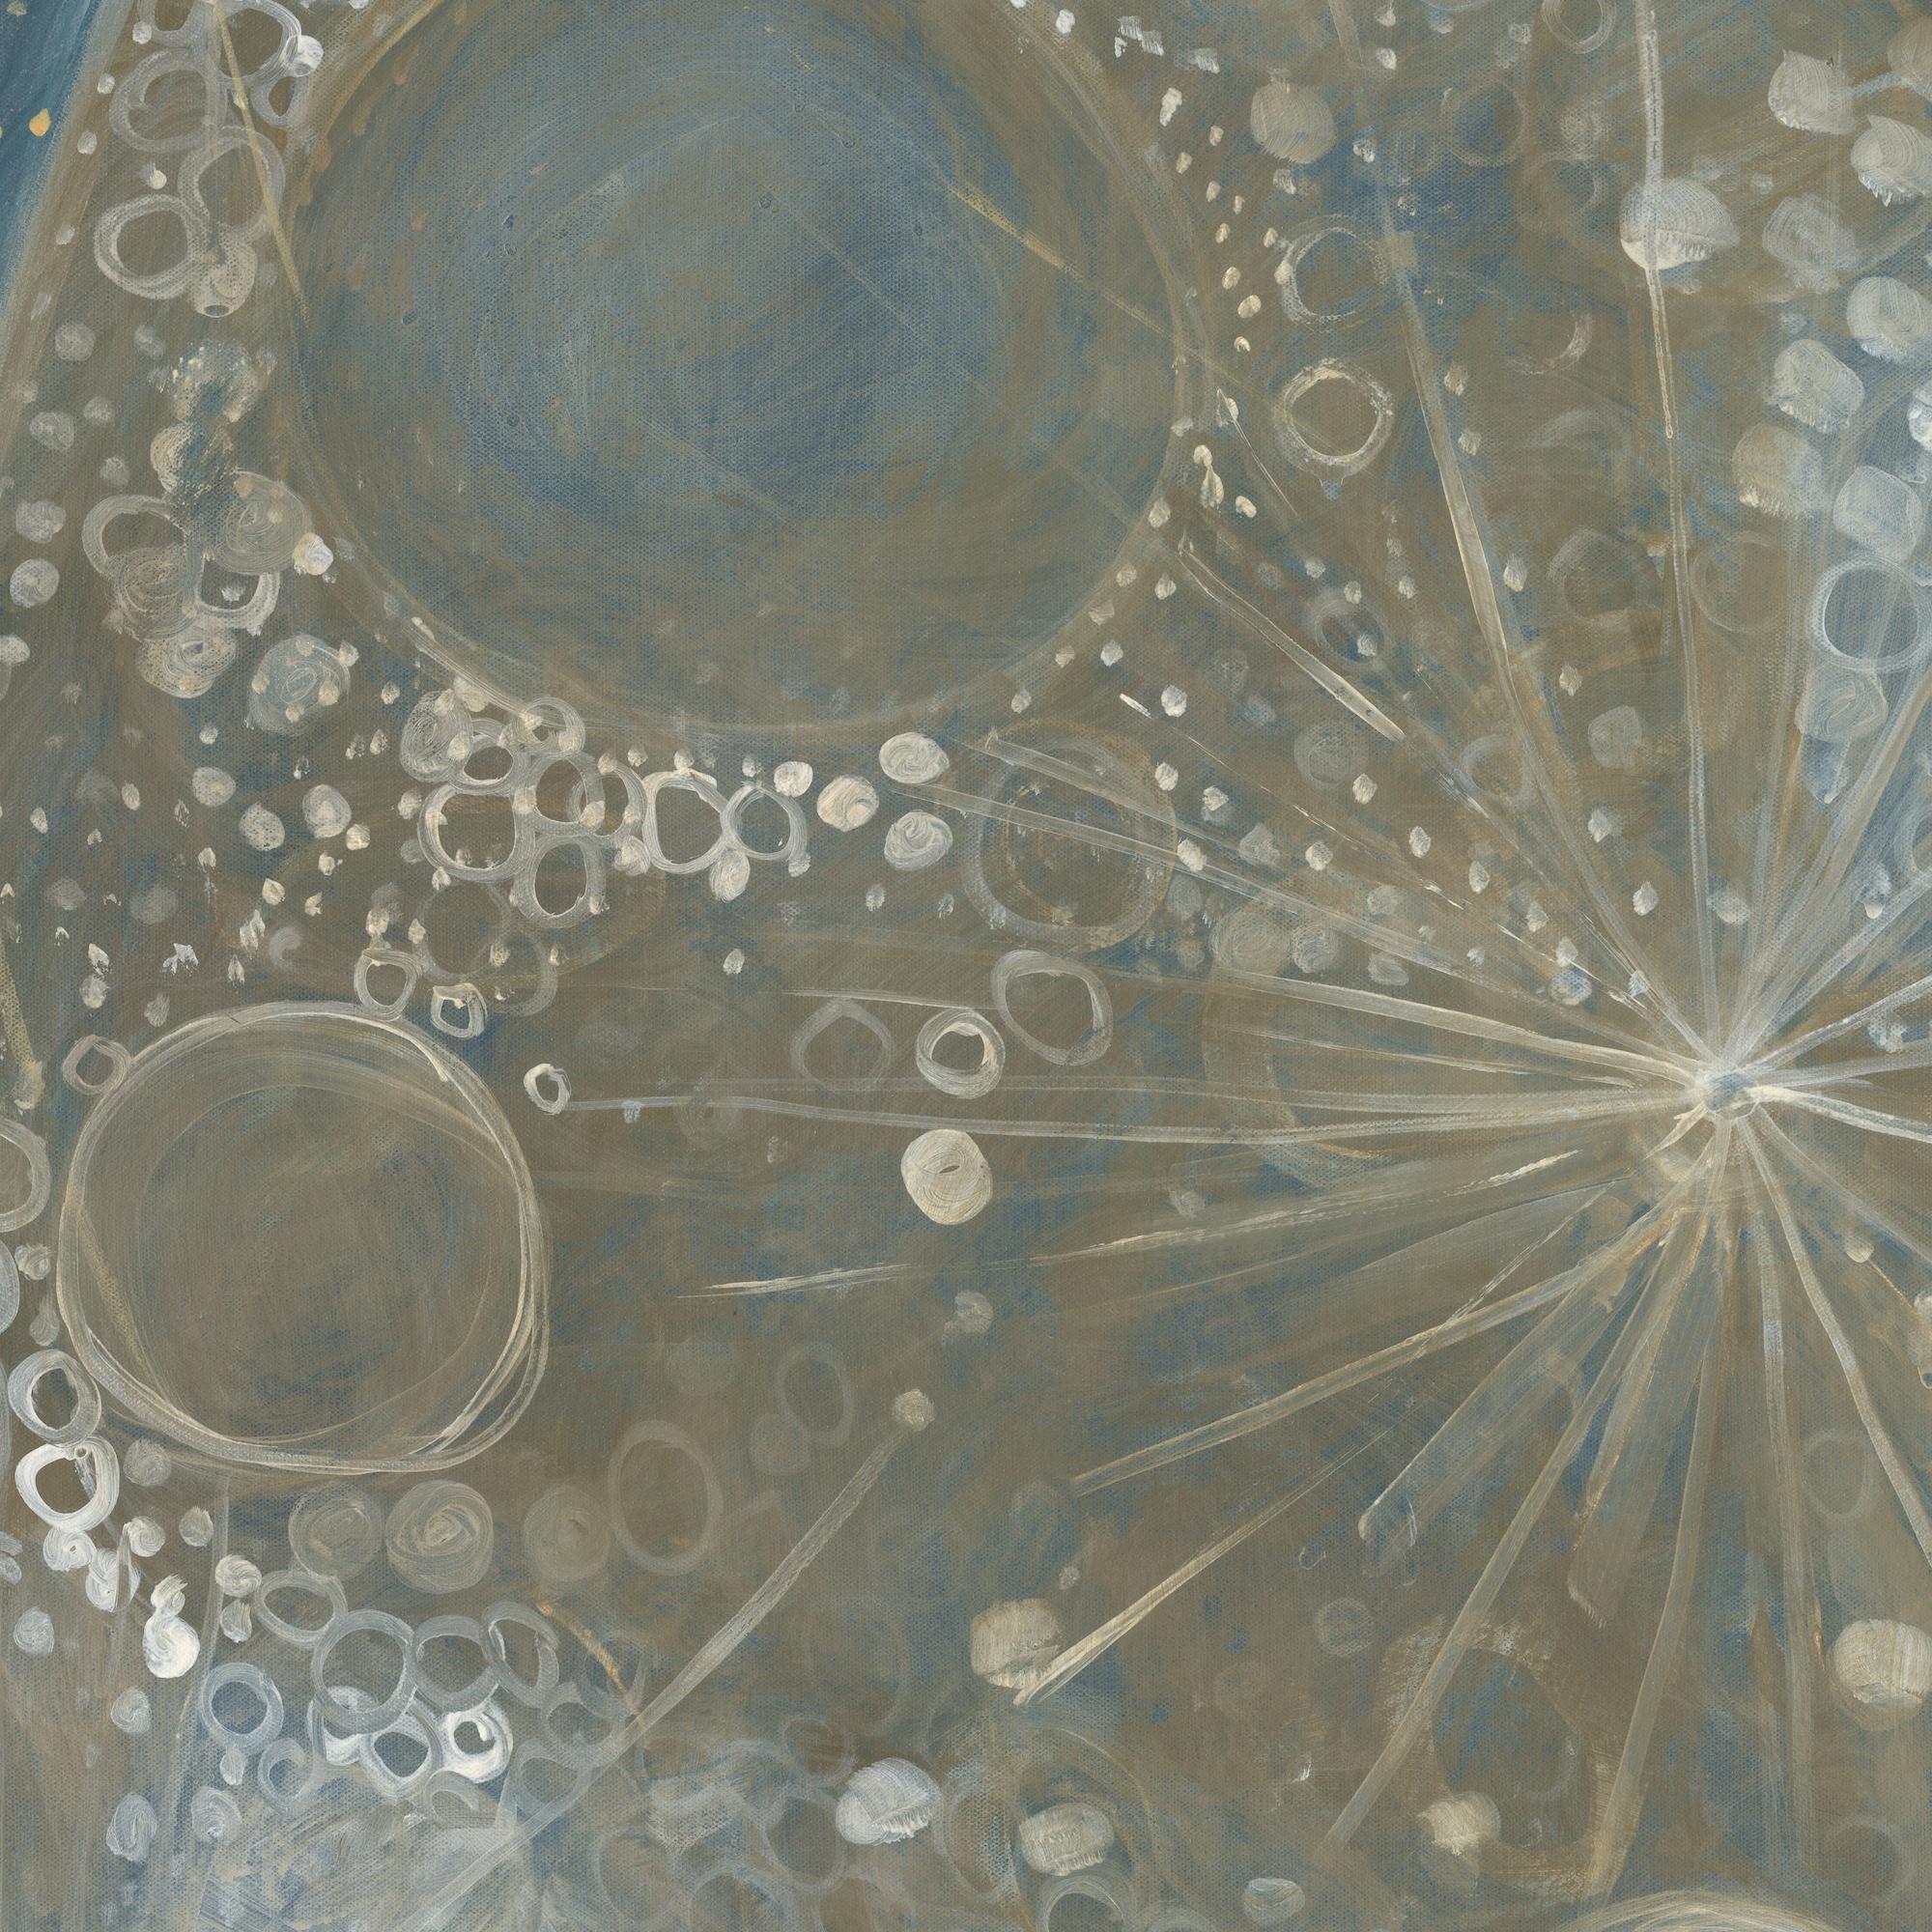 Abstraktes Celestial-Gemälde in Mischtechnik auf Leinwand Blau, Gold, Weiß – Painting von Alex K. Mason